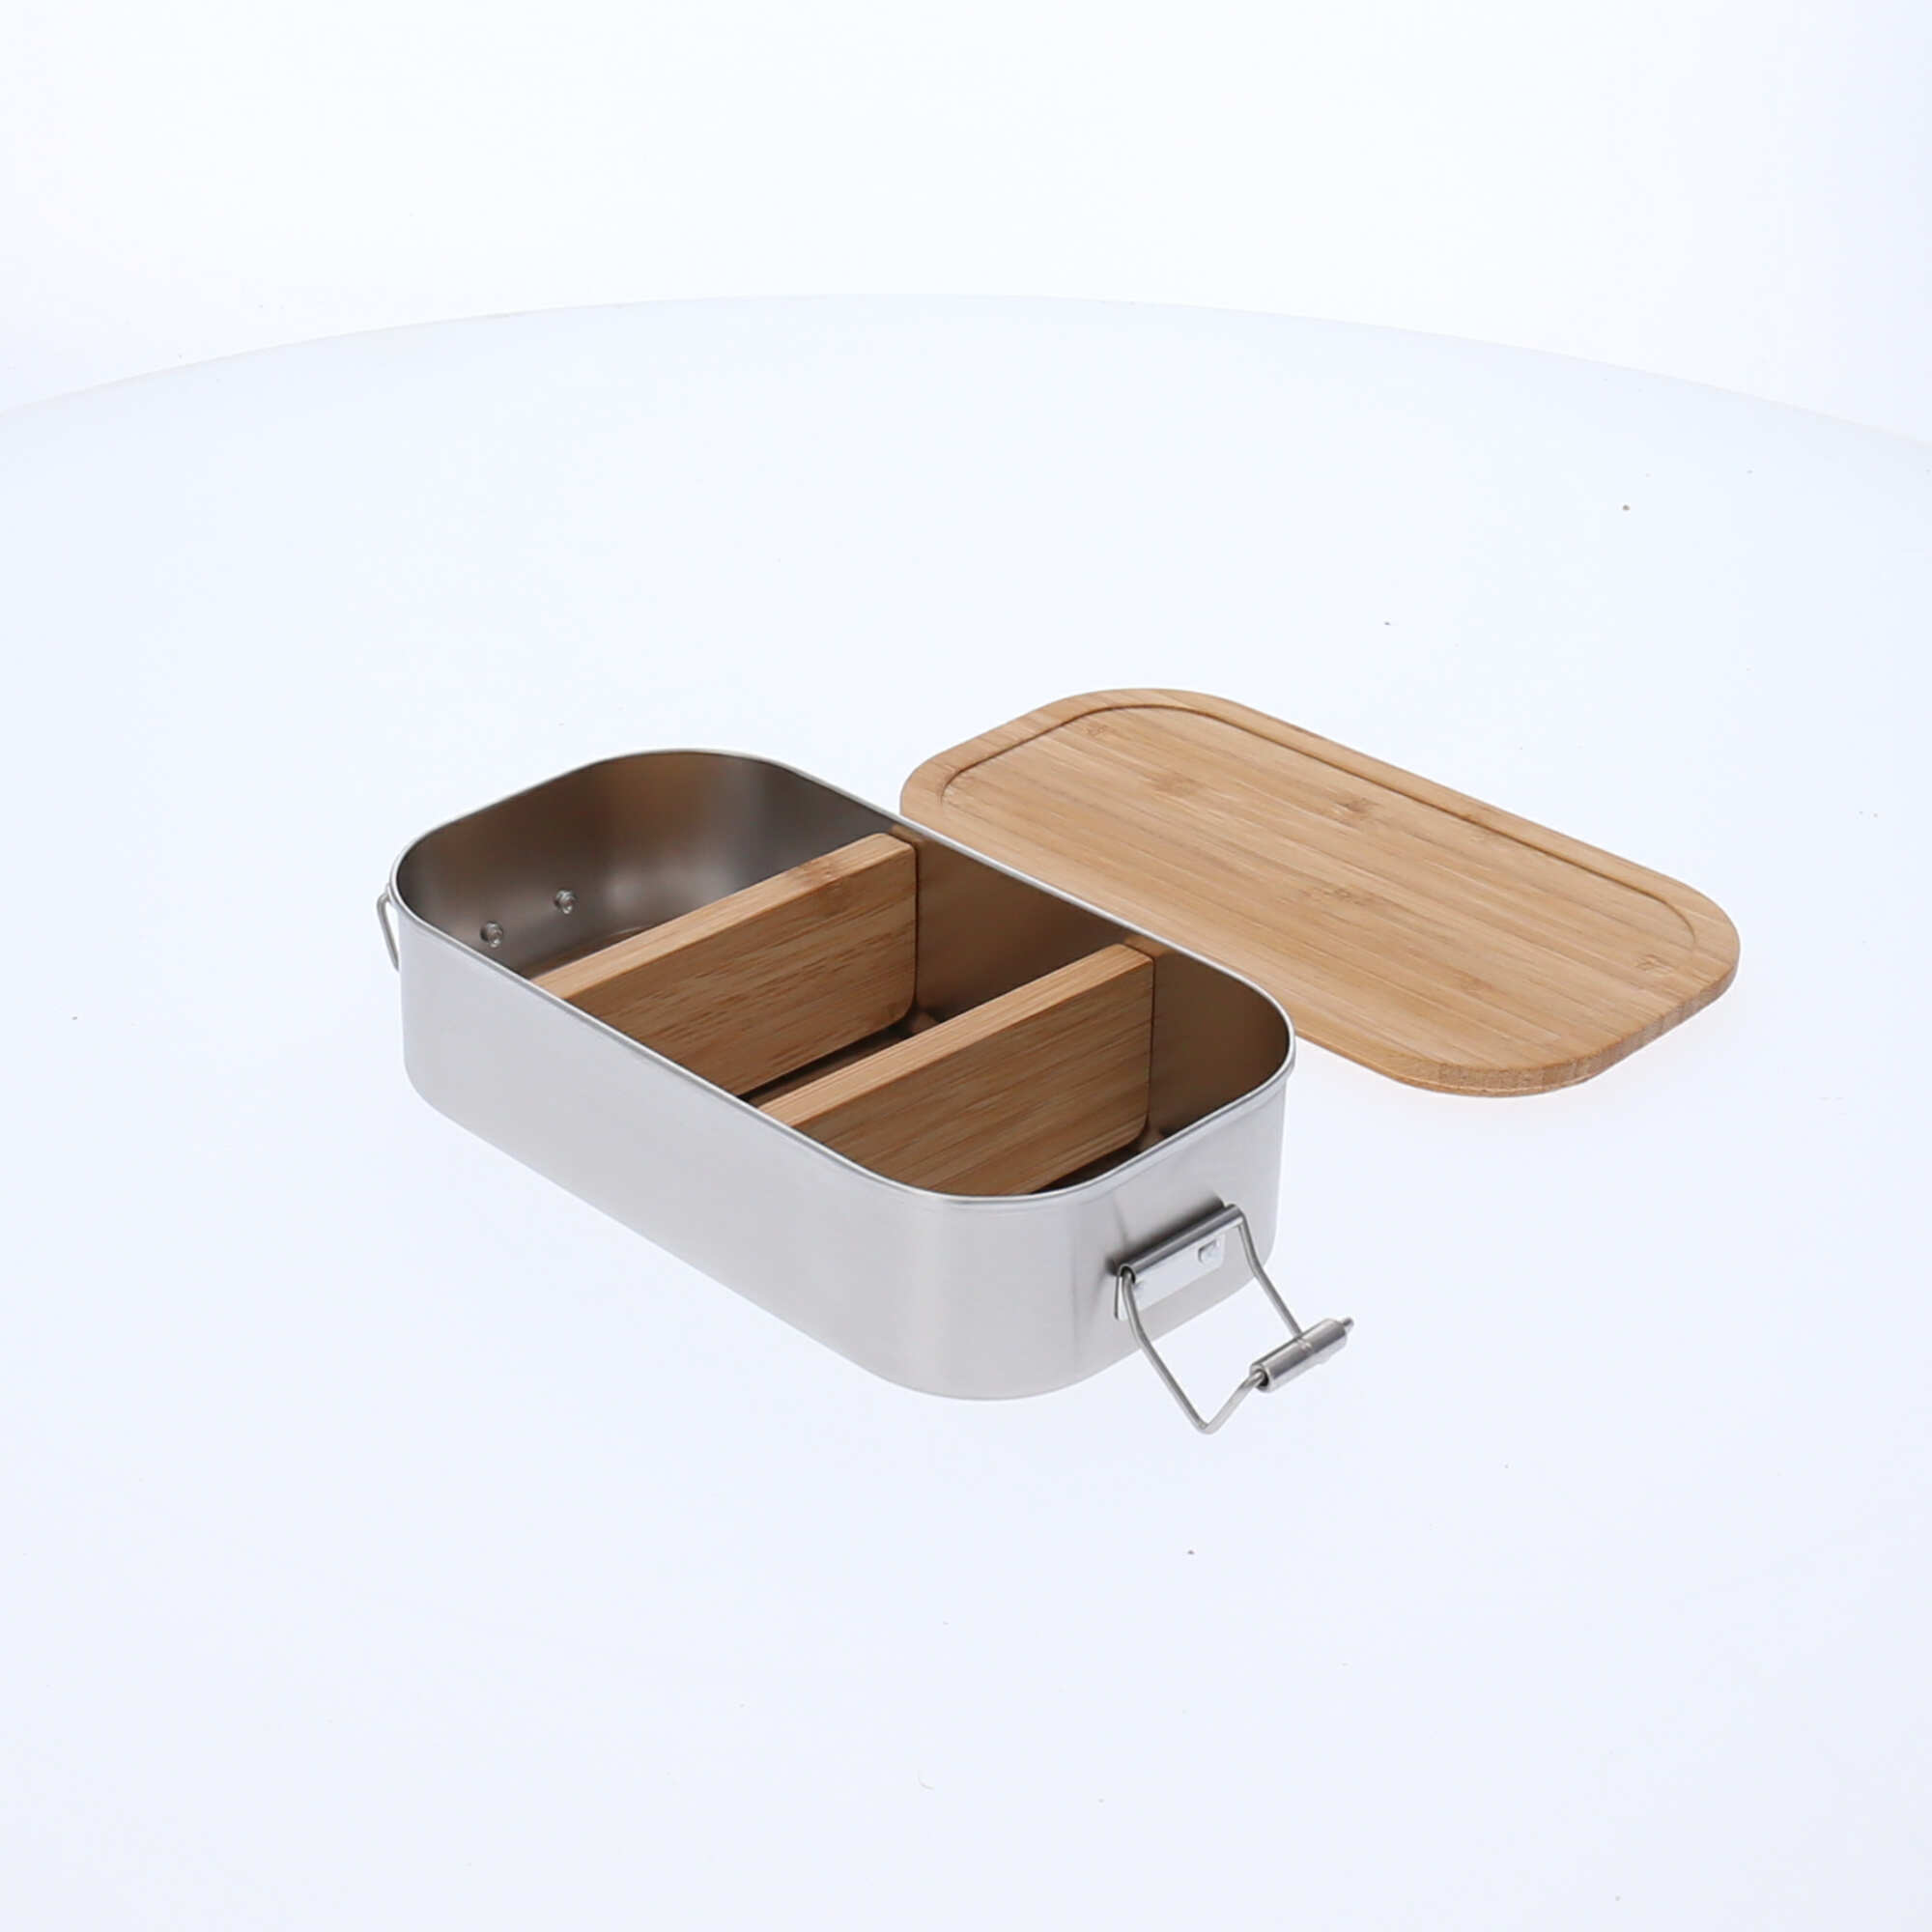 Personalisierte Brotdose durch Gravur mit zwei Trennwänden als Brotbüchen Zusatz, um das Essen sauber trennen zu können, die Trennwände sind flexibel einsetzbar